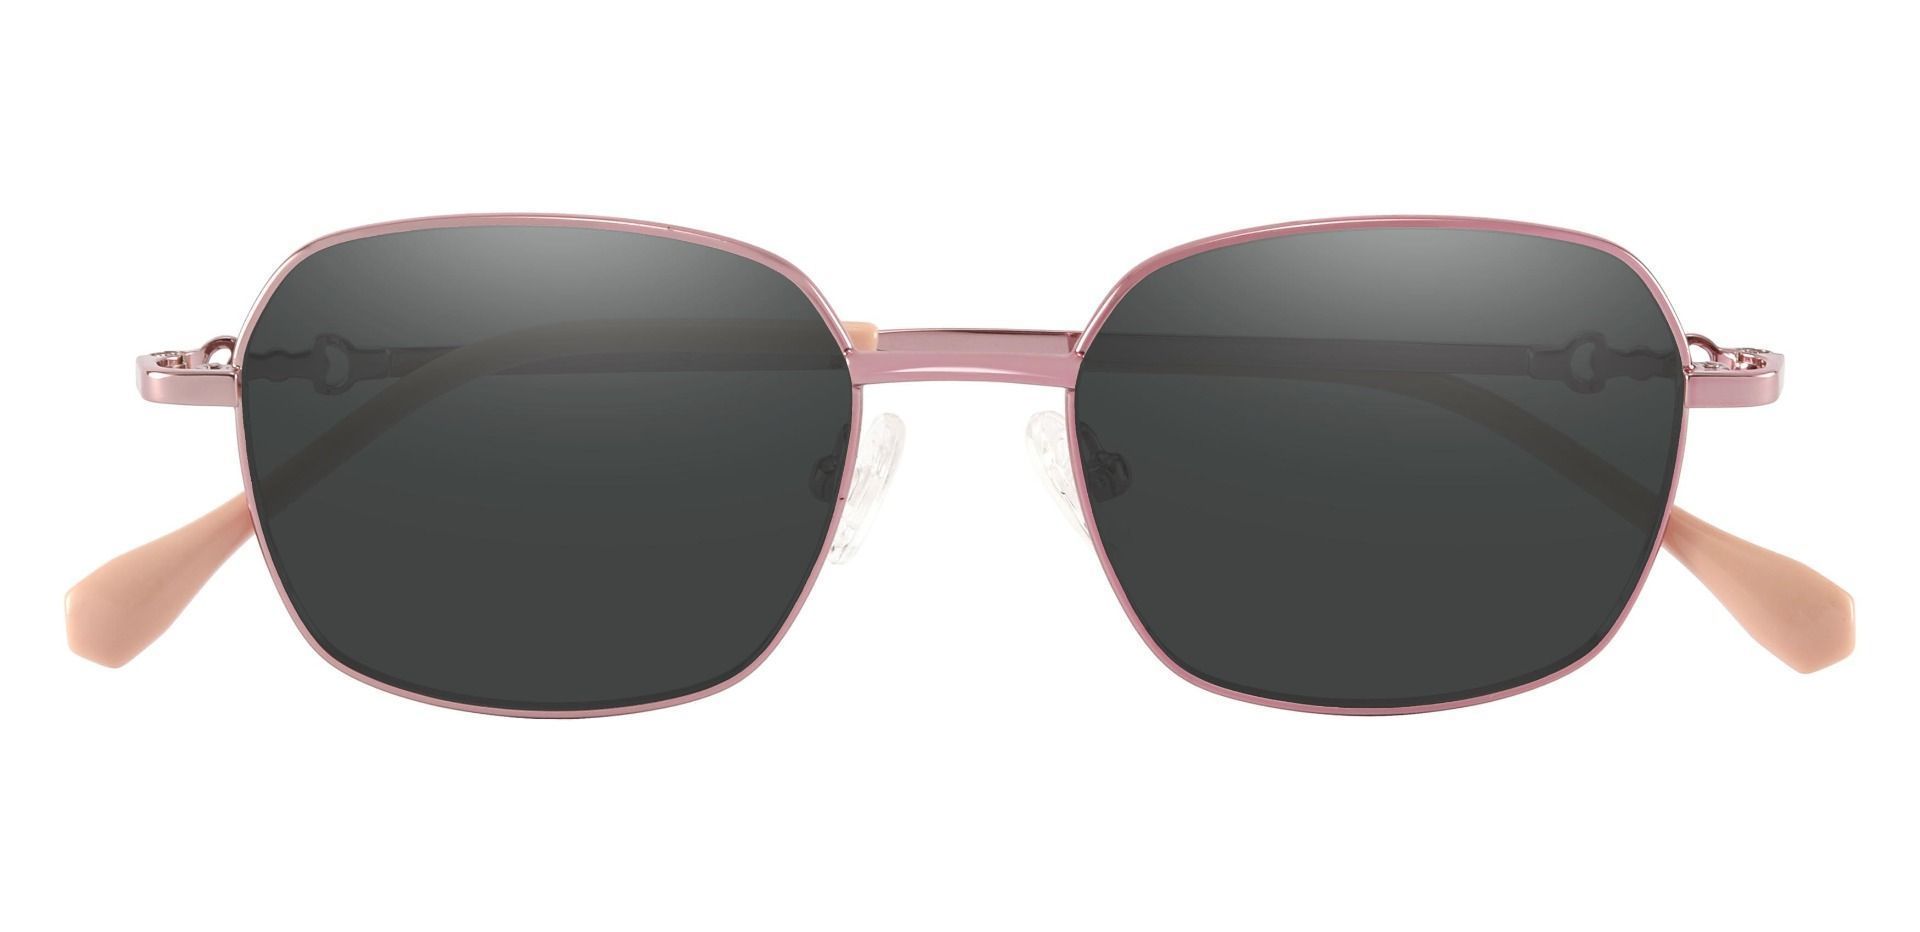 Averill Geometric Prescription Sunglasses - Rose Gold Frame With Gray Lenses